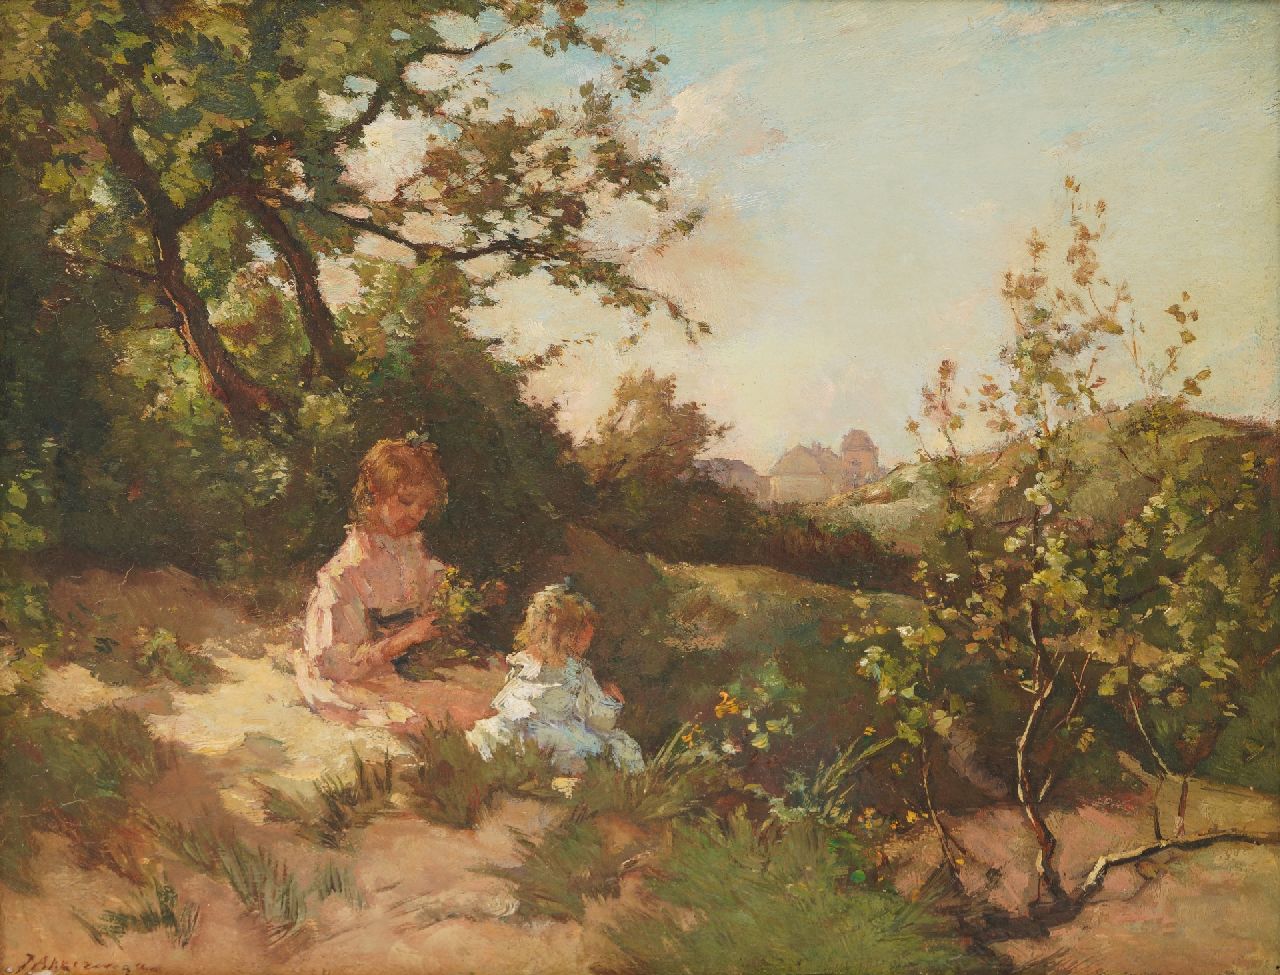 Akkeringa J.E.H.  | 'Johannes Evert' Hendrik Akkeringa | Schilderijen te koop aangeboden | Kinderen in de duinen, olieverf op paneel 31,5 x 39,0 cm, gesigneerd linksonder